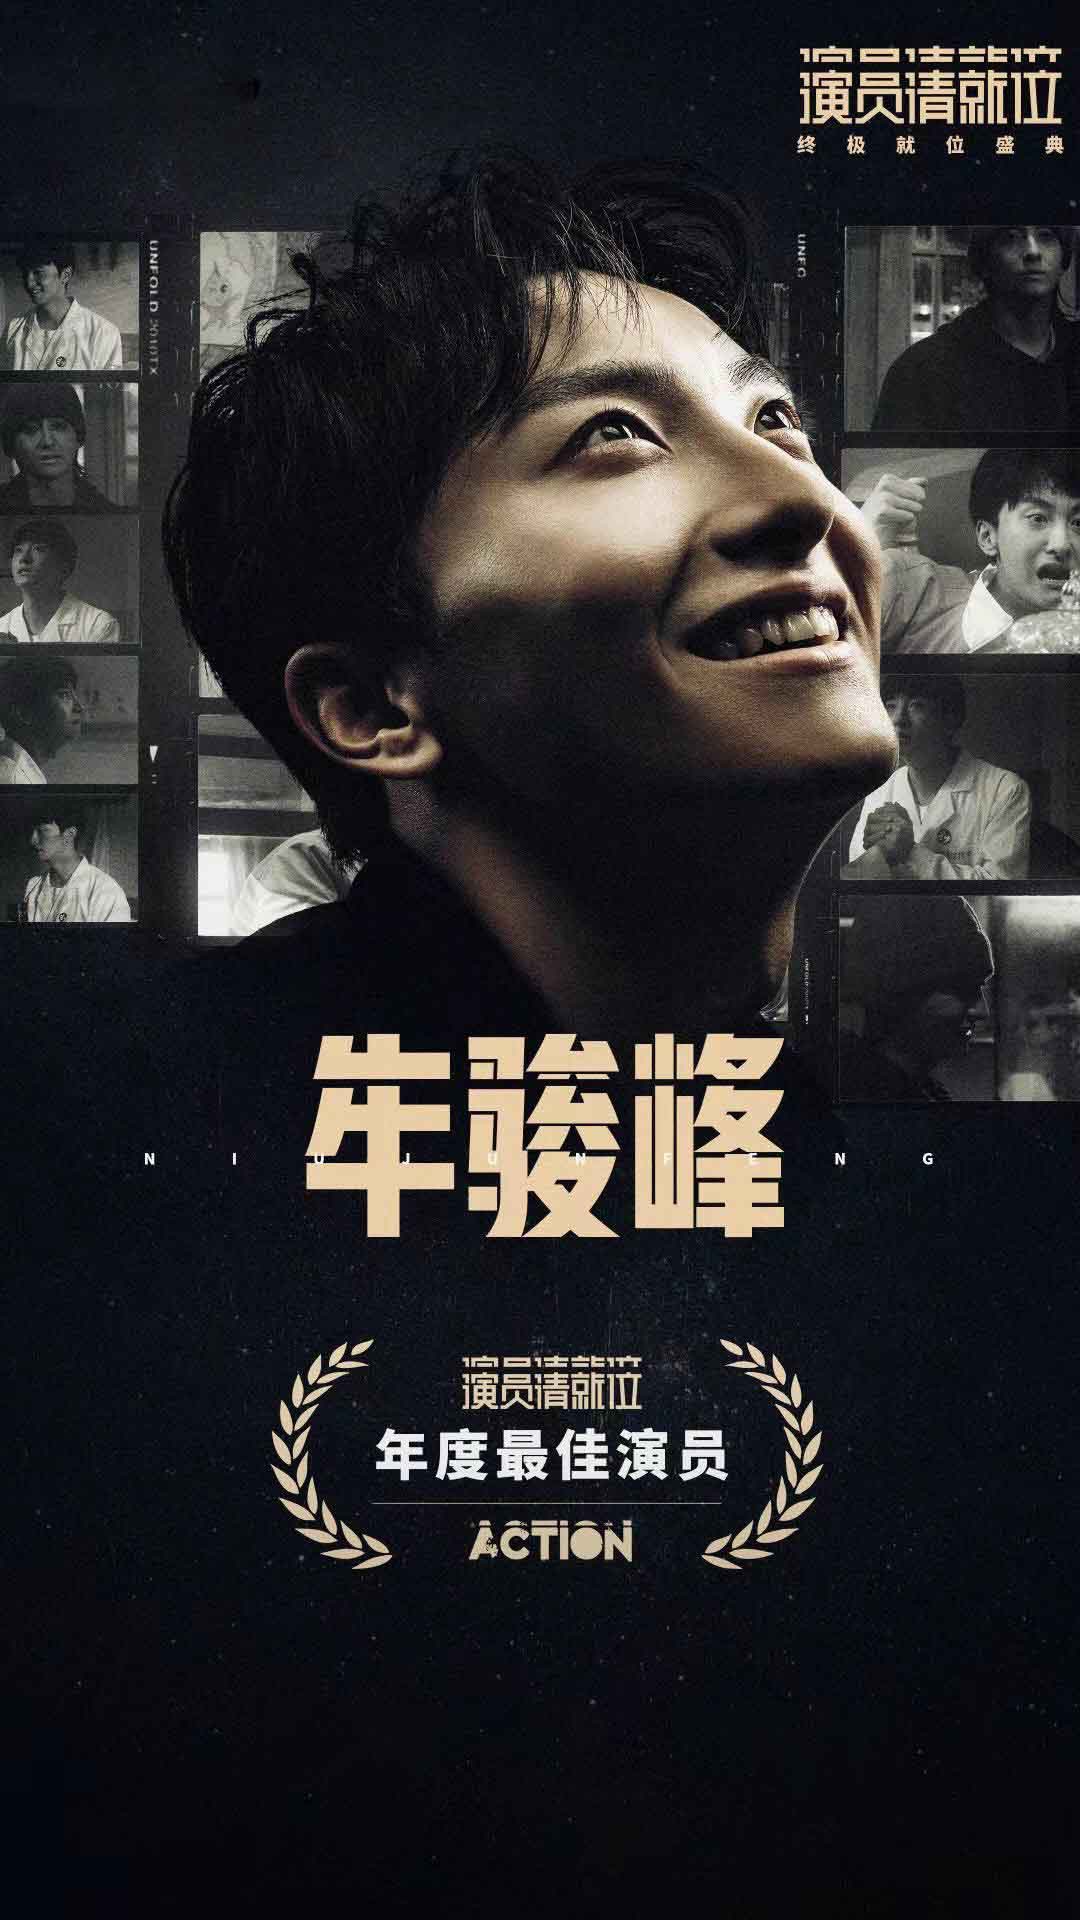 牛骏峰荣获《演员请就位》年度最佳演员 演技受赞实至名归